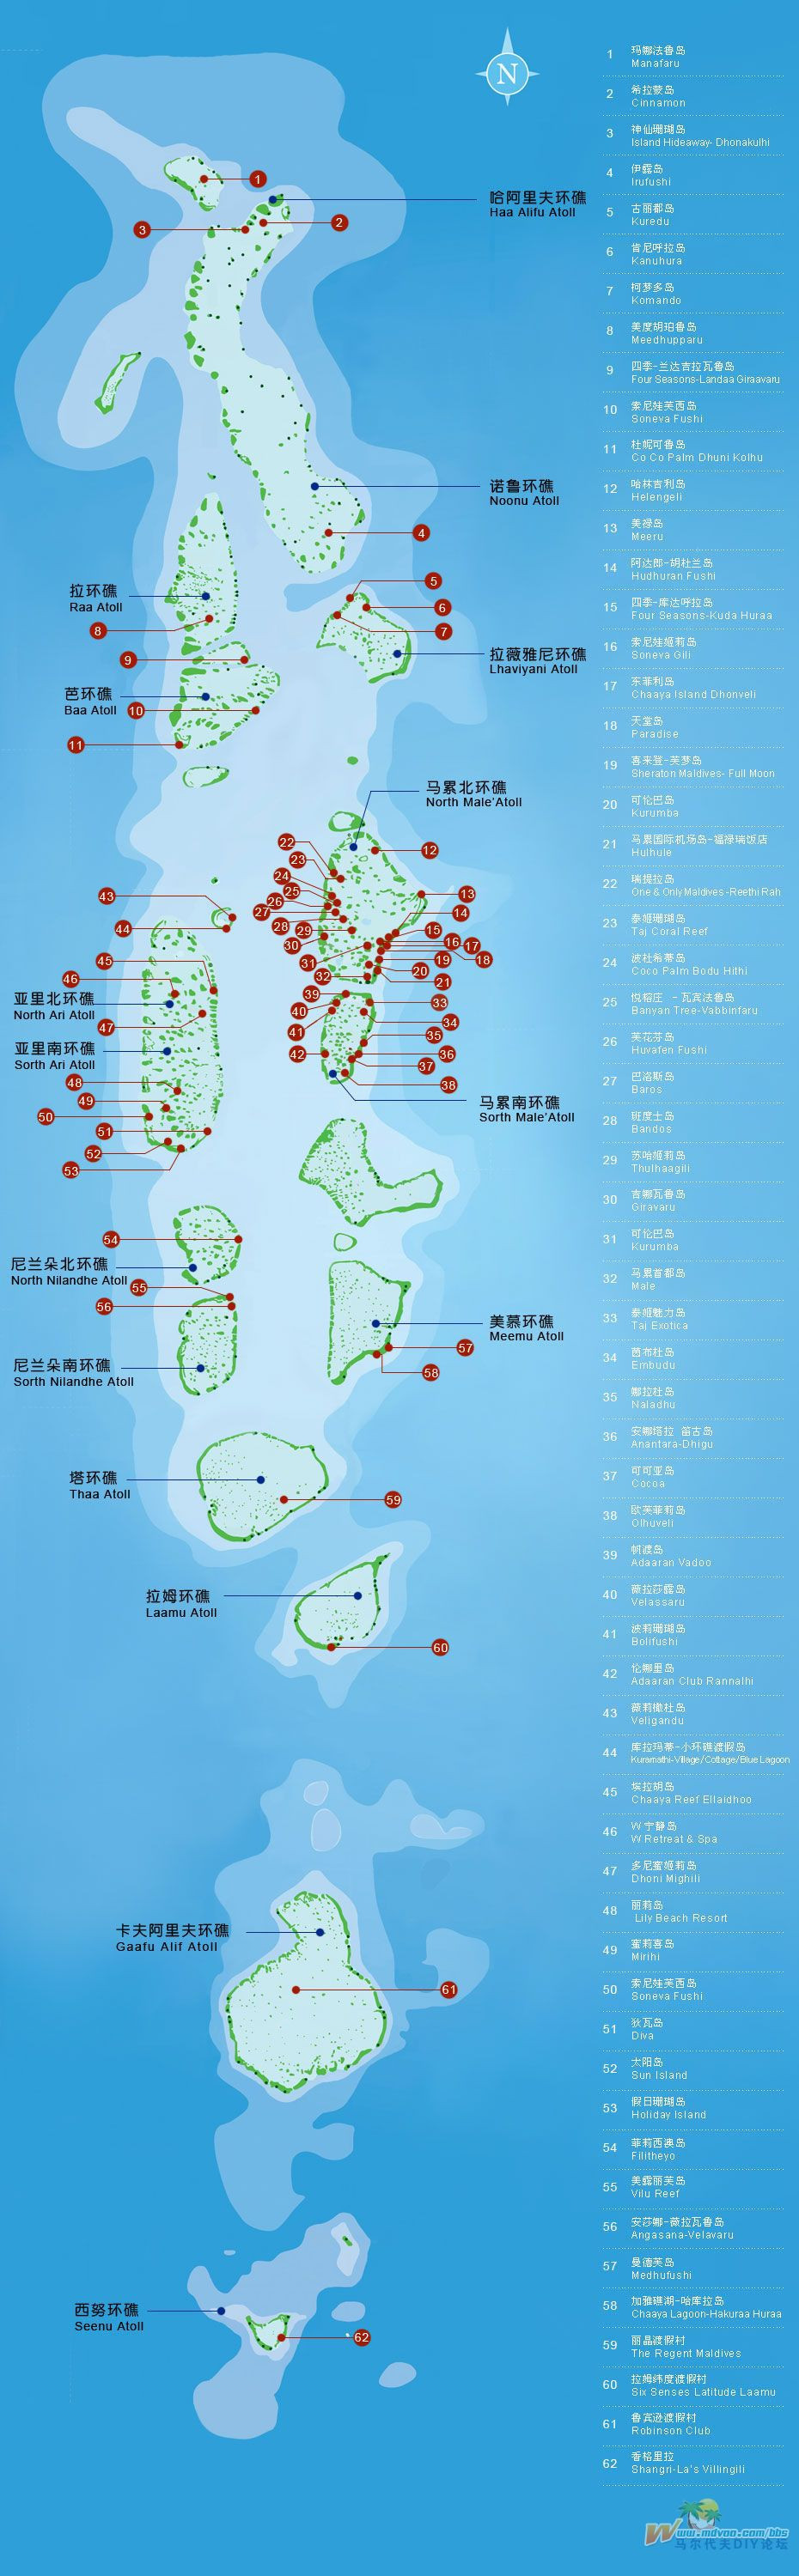 之一,马尔代夫地图图片